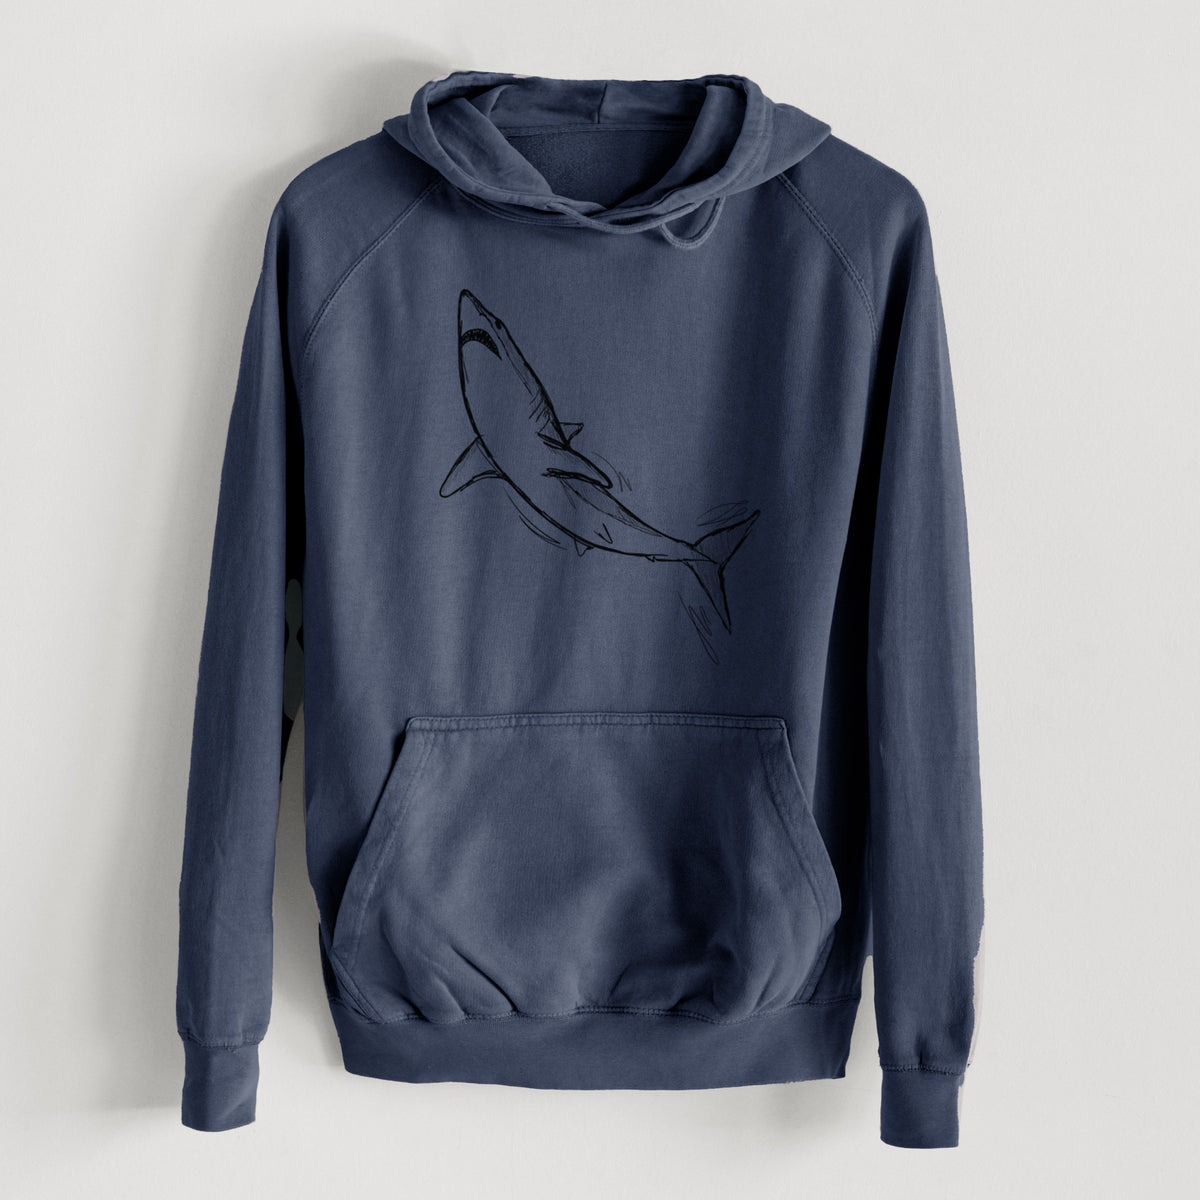 Shortfin Mako Shark  - Mid-Weight Unisex Vintage 100% Cotton Hoodie